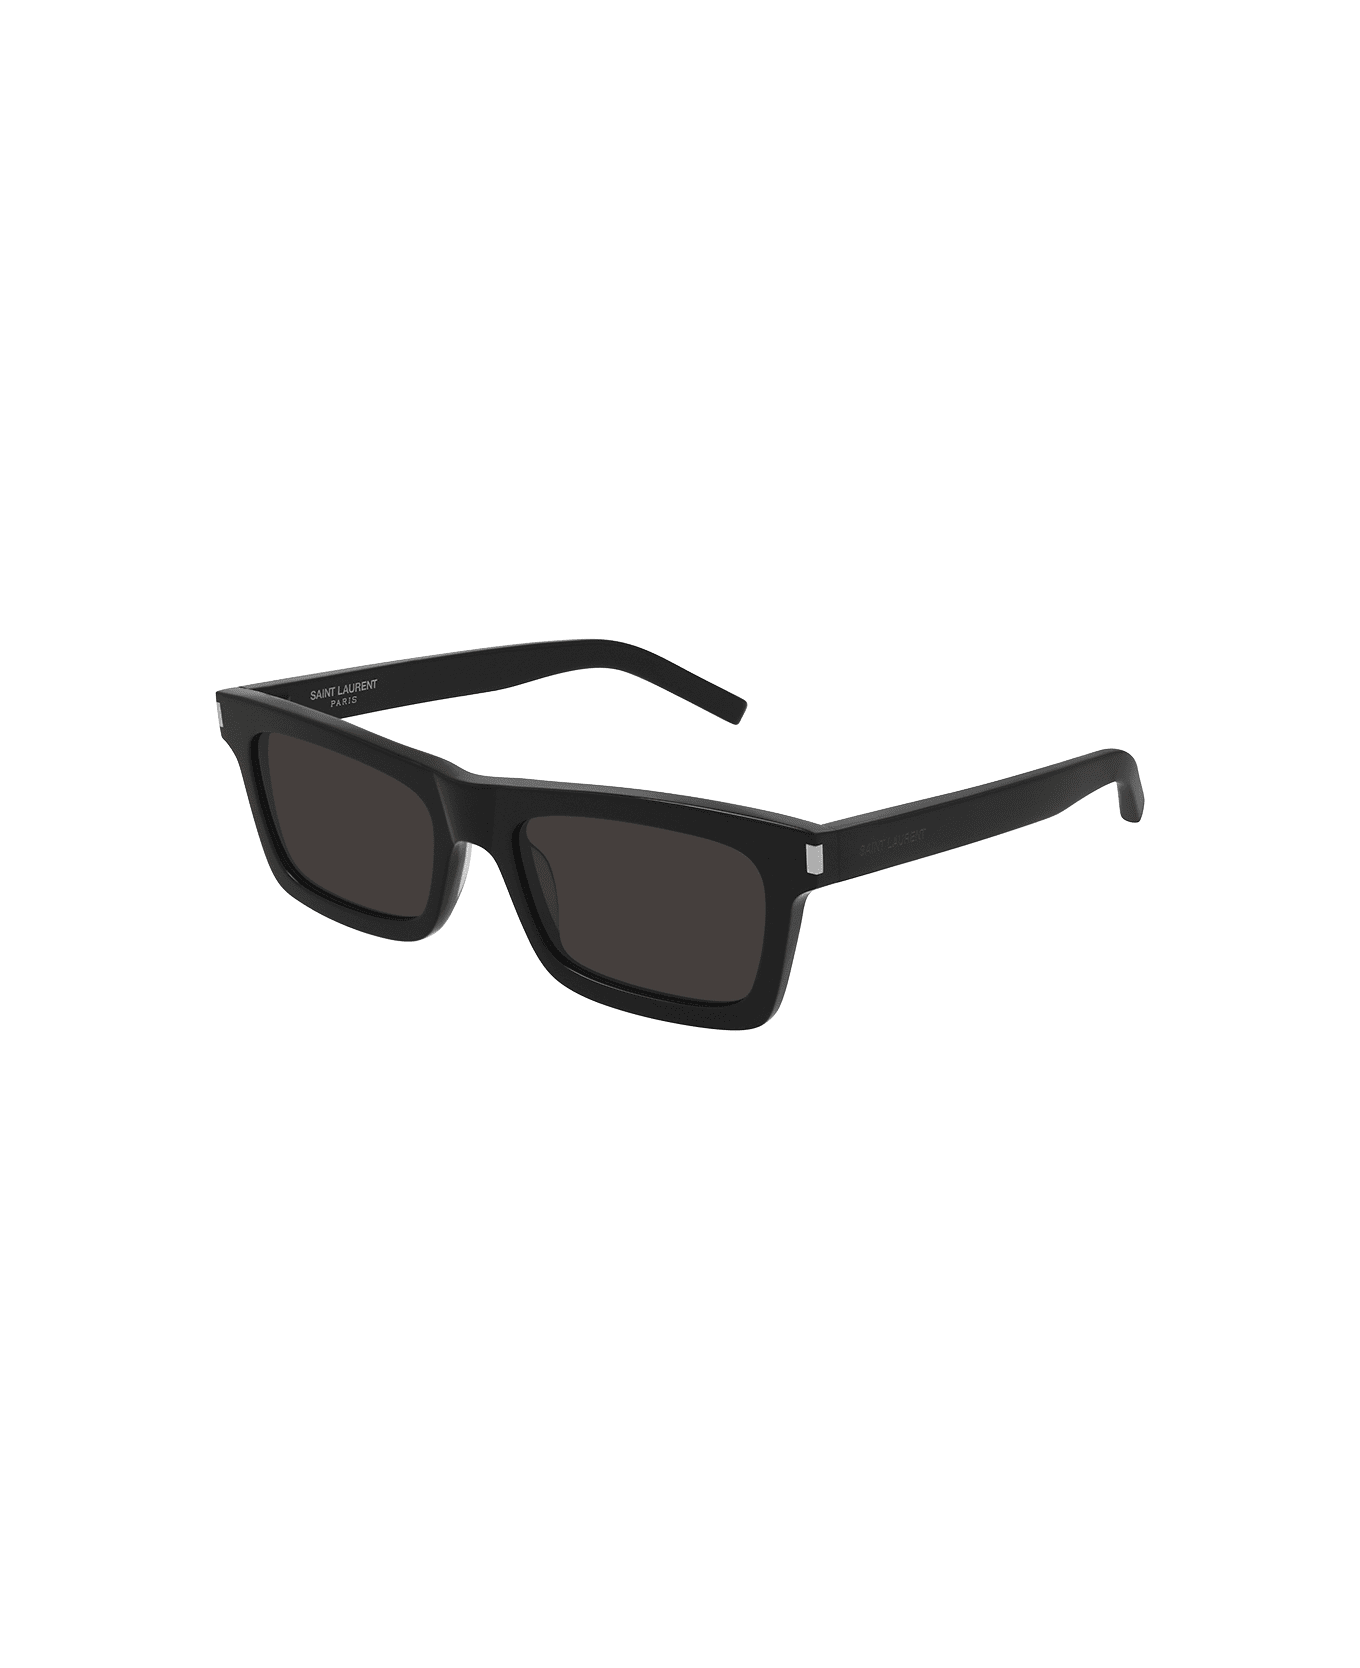 Saint Laurent Eyewear Sunglasses Lovers - Nero/Nero